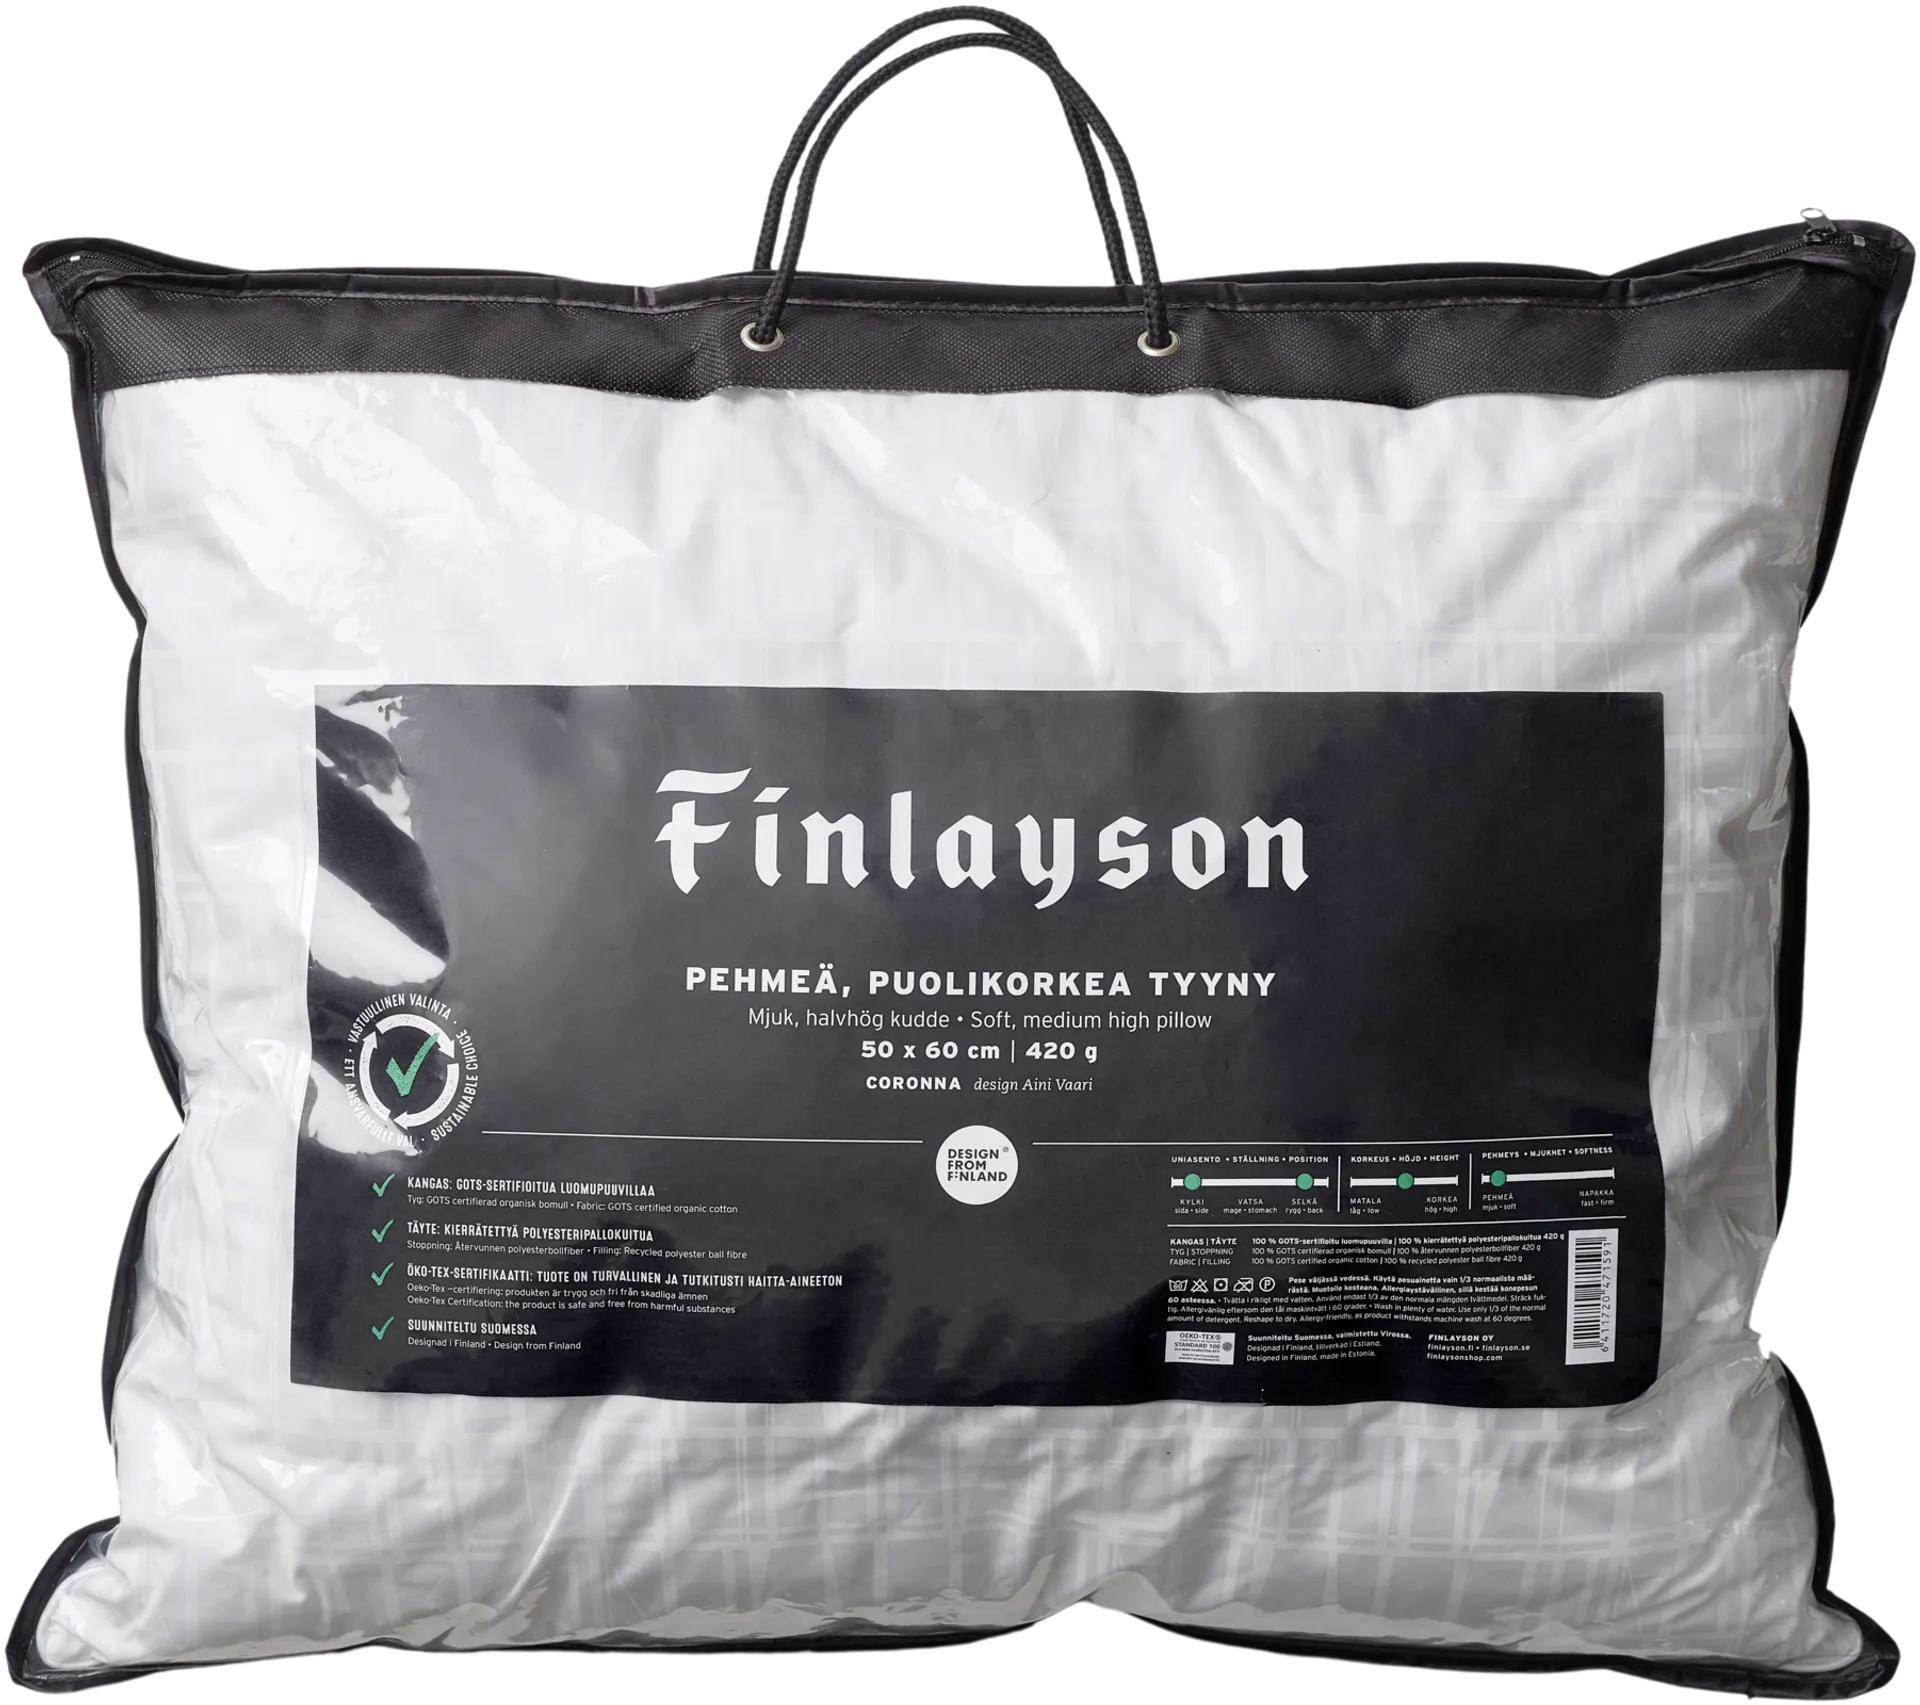 Finlayson tyyny Premium Coronna puolikorkea pehmeä 50x60cm valkoinen - 3